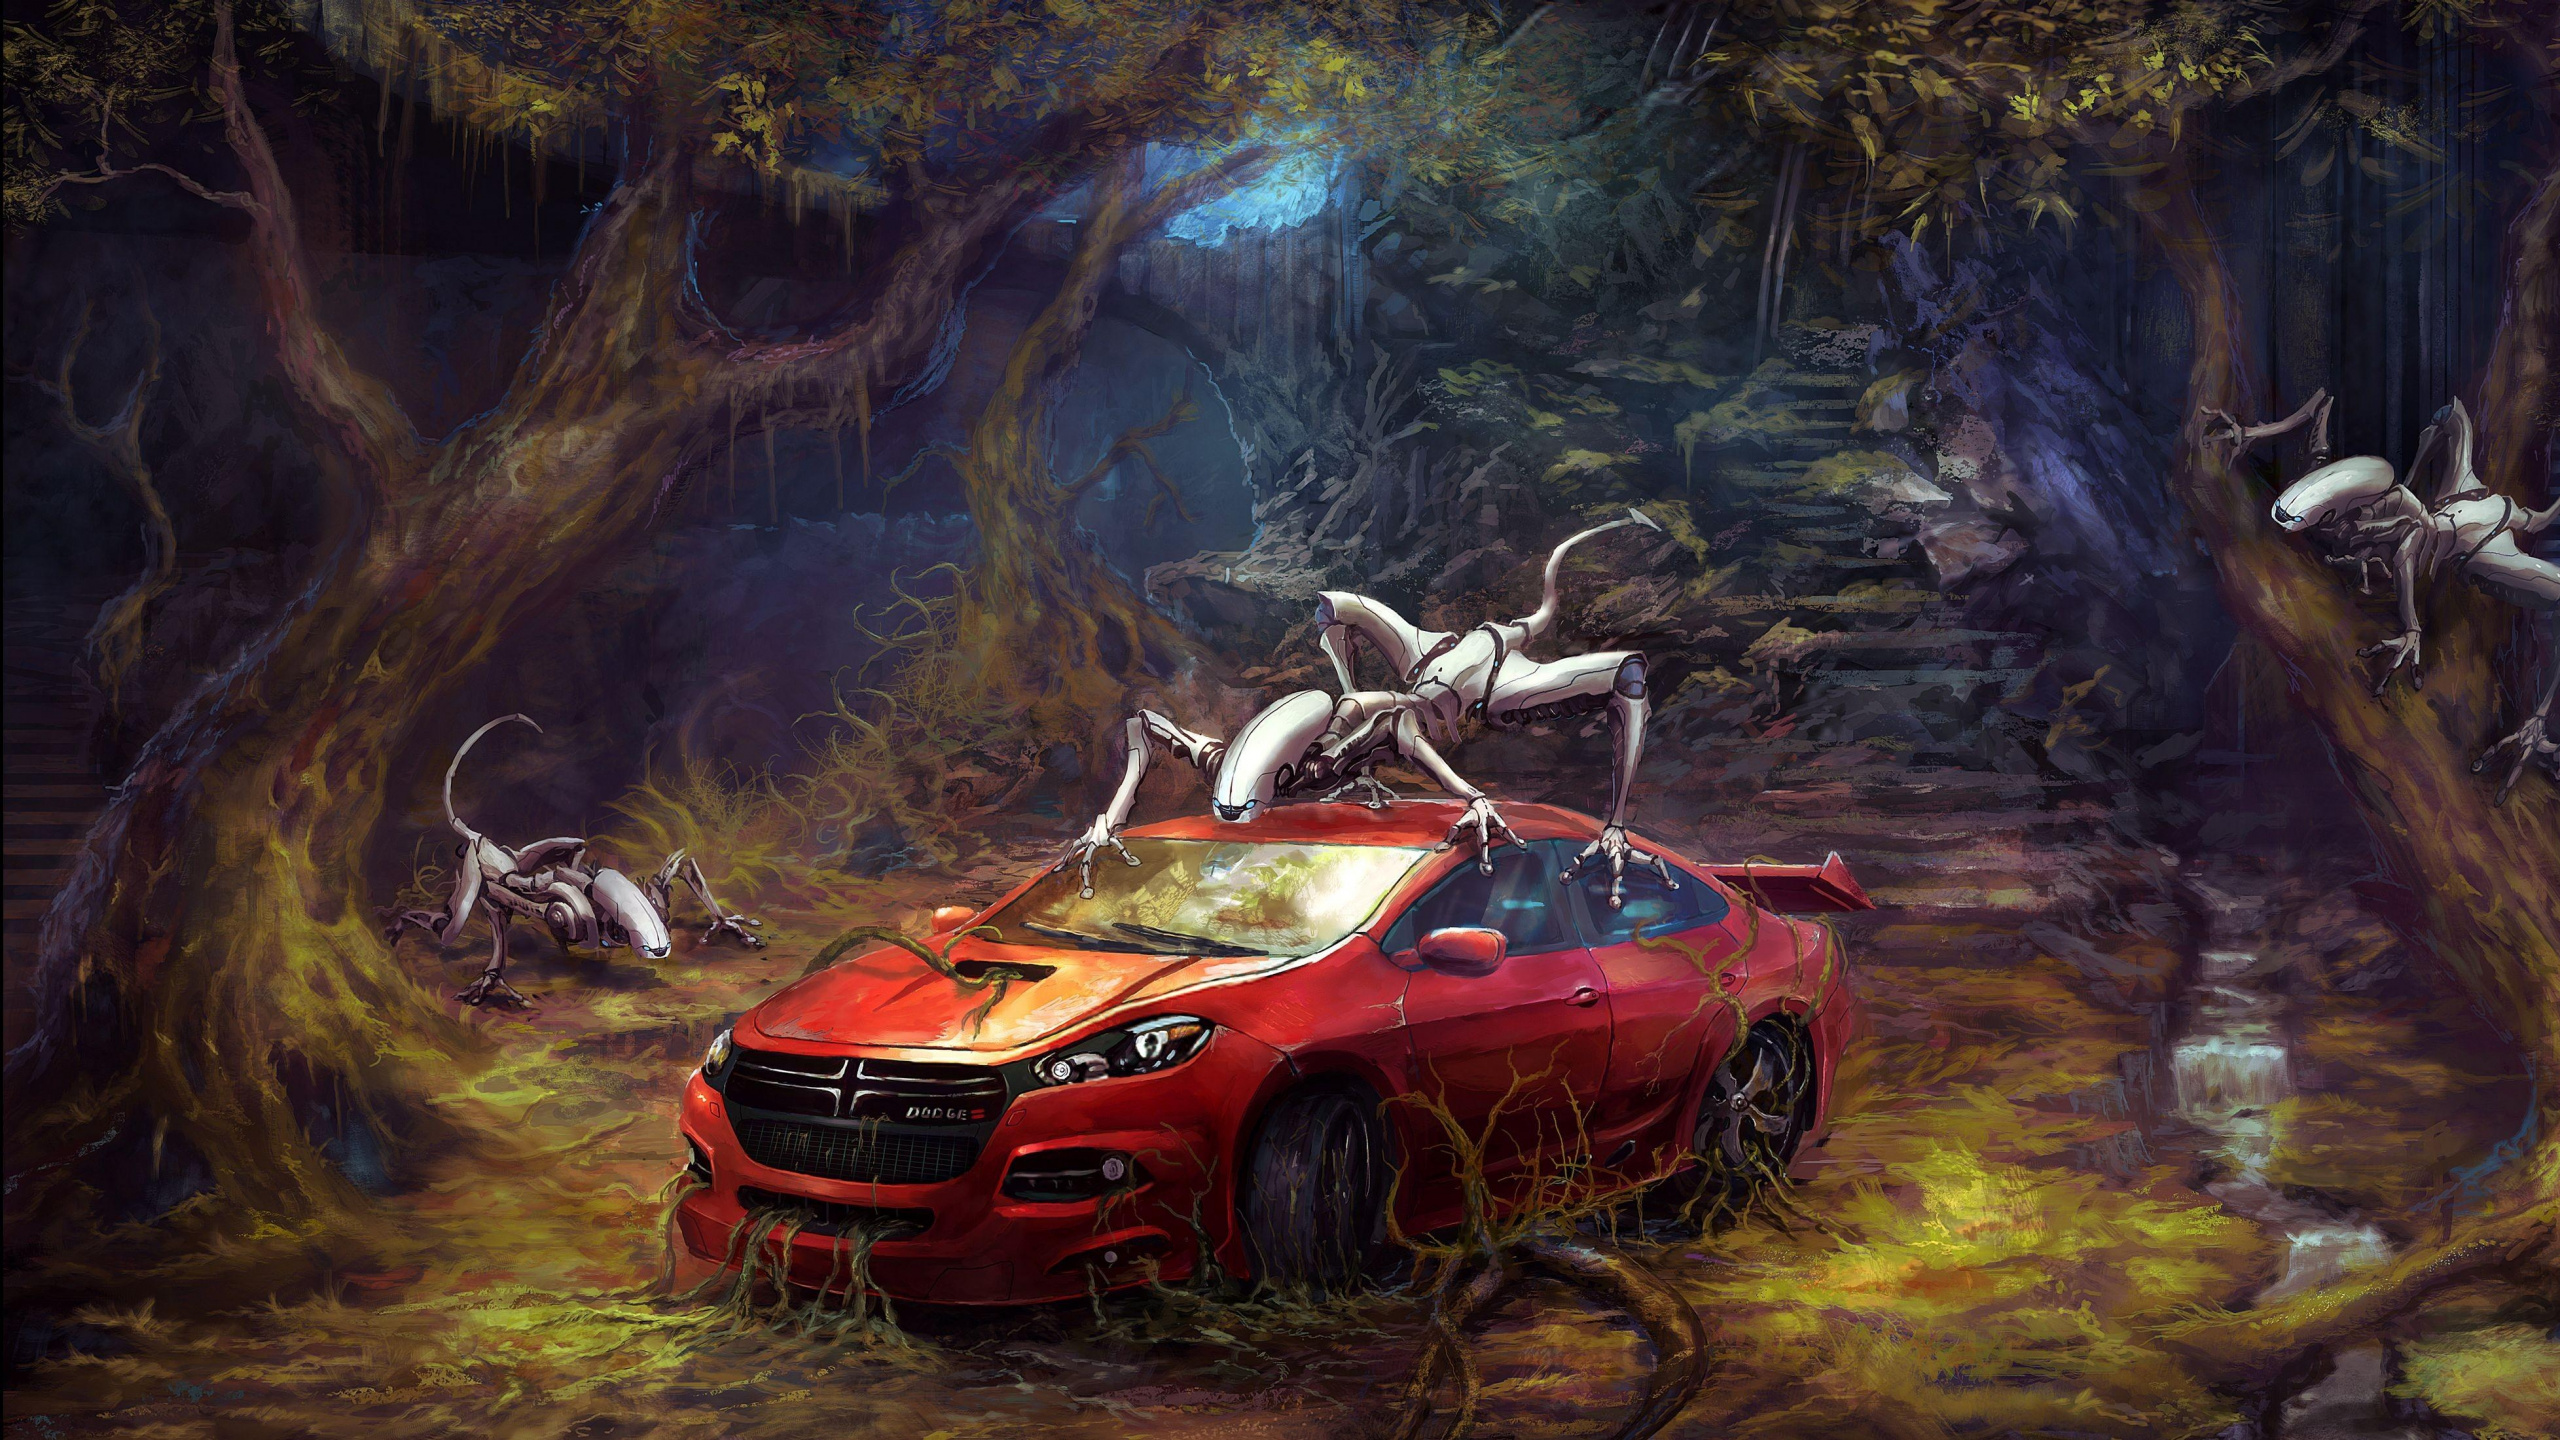 Roter Und Schwarzer Chevrolet-Camaro. Wallpaper in 2560x1440 Resolution